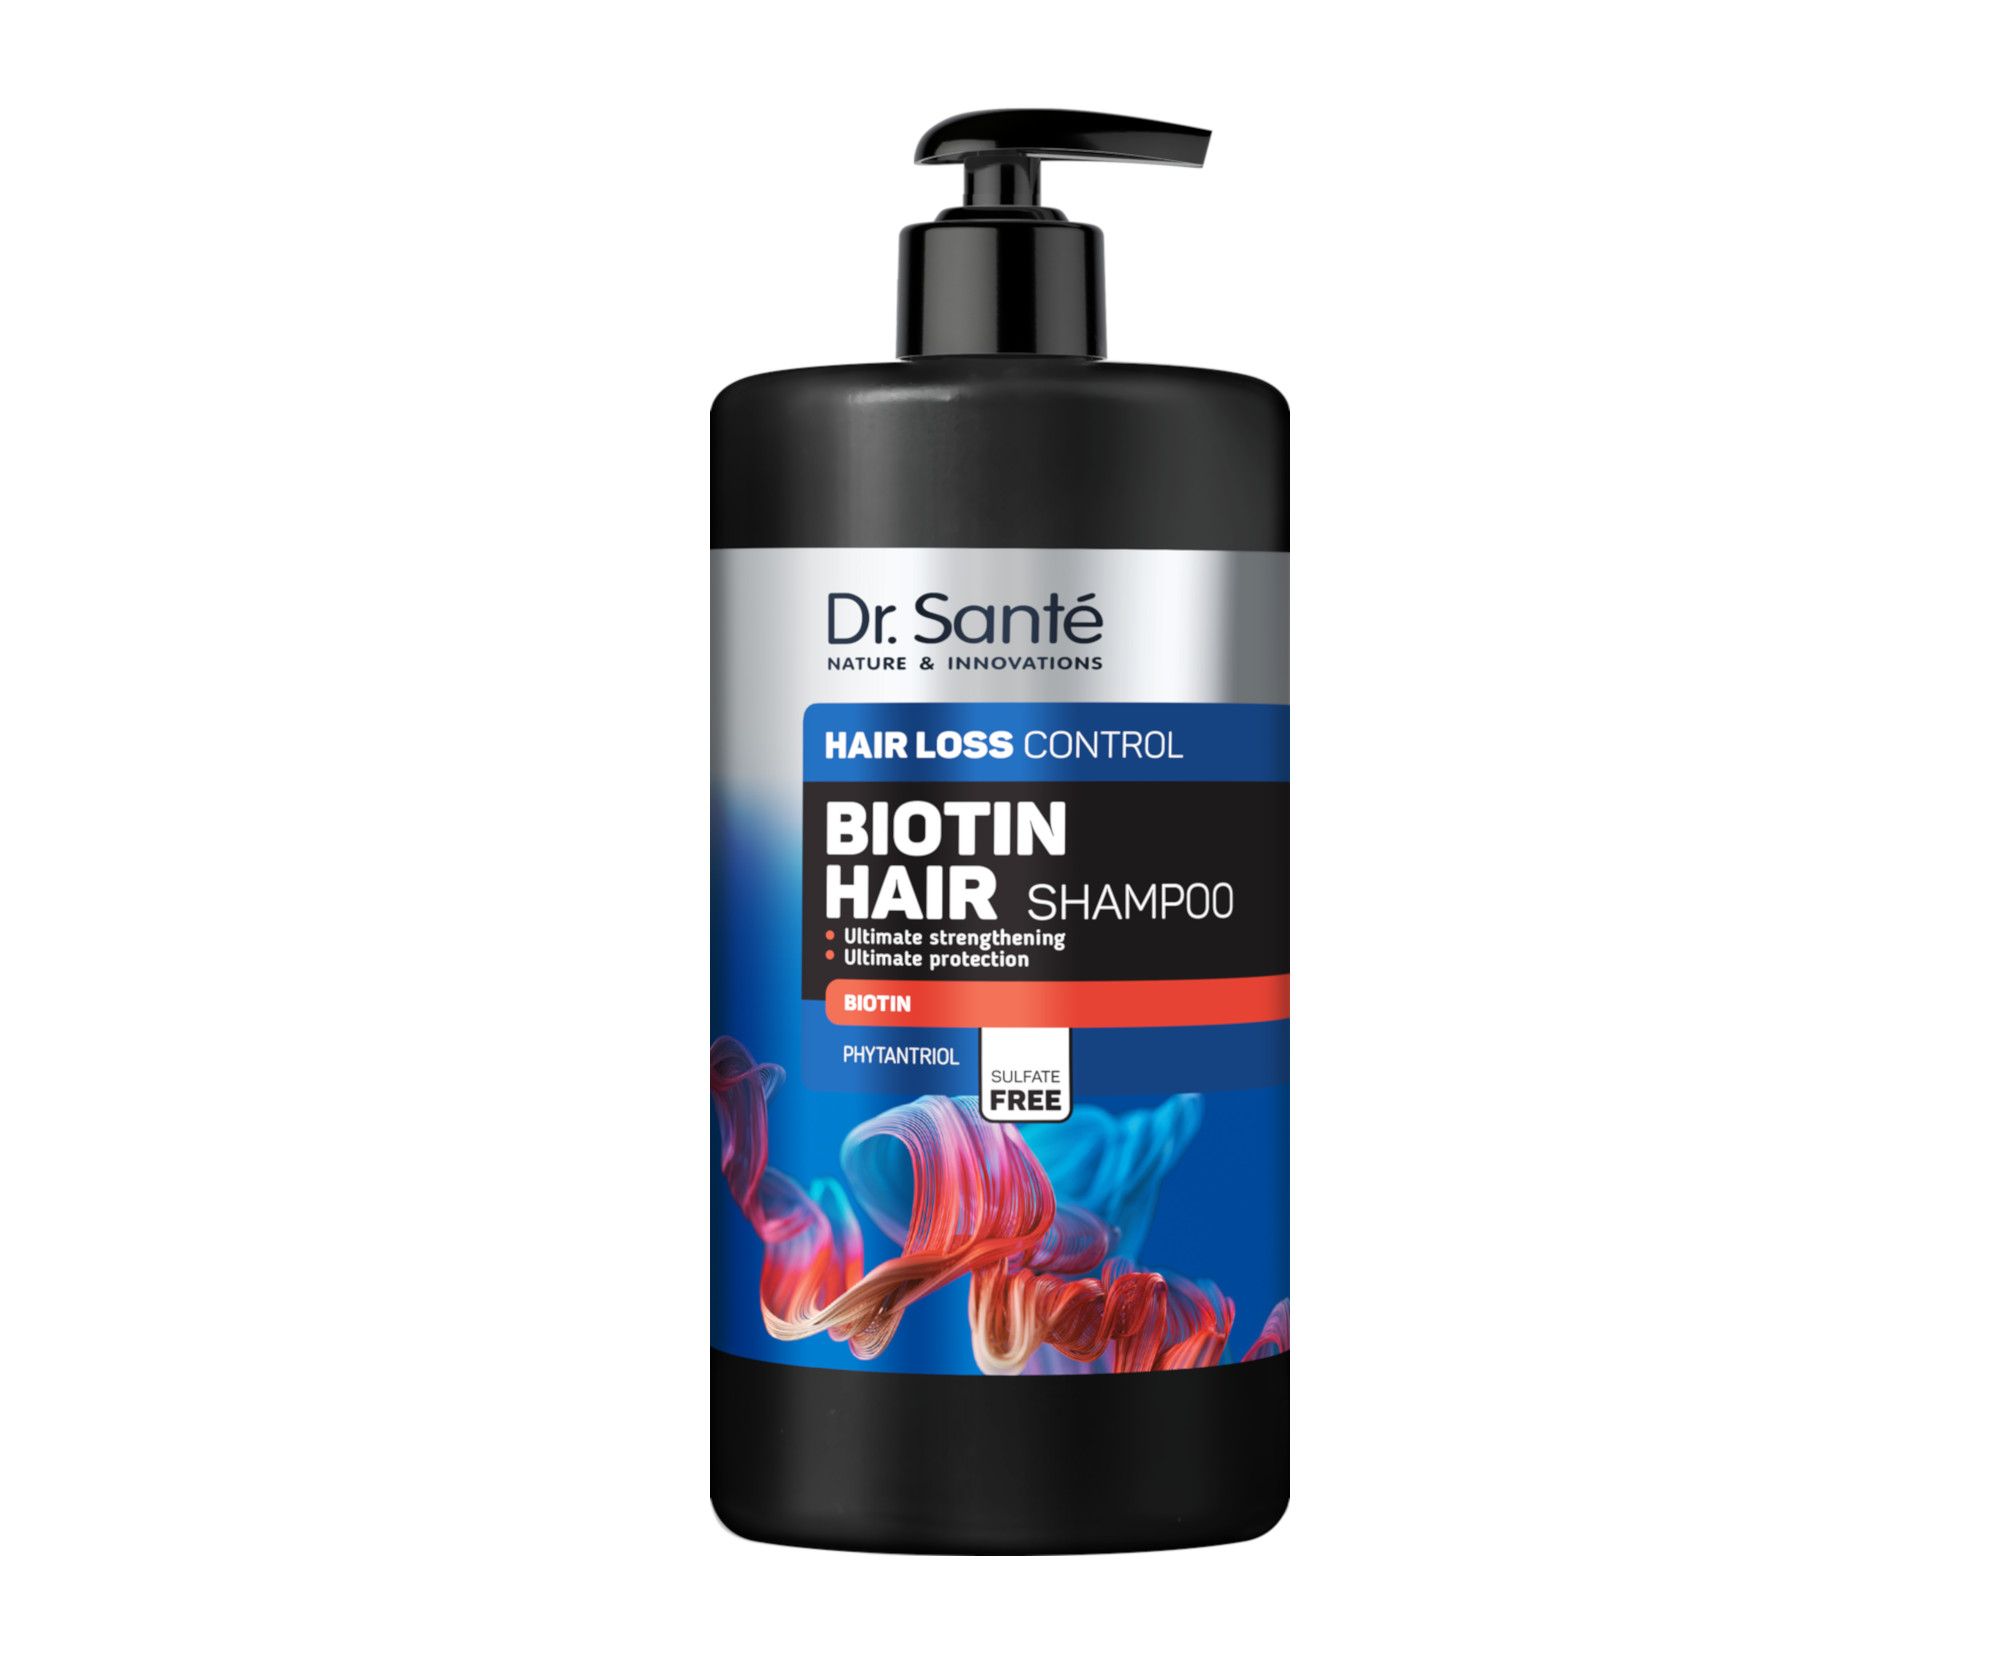 Šampon proti vypadávání vlasů Dr. Santé Hair Loss Control Biotin Hair Shampoo - 1000 ml + dárek zdarma